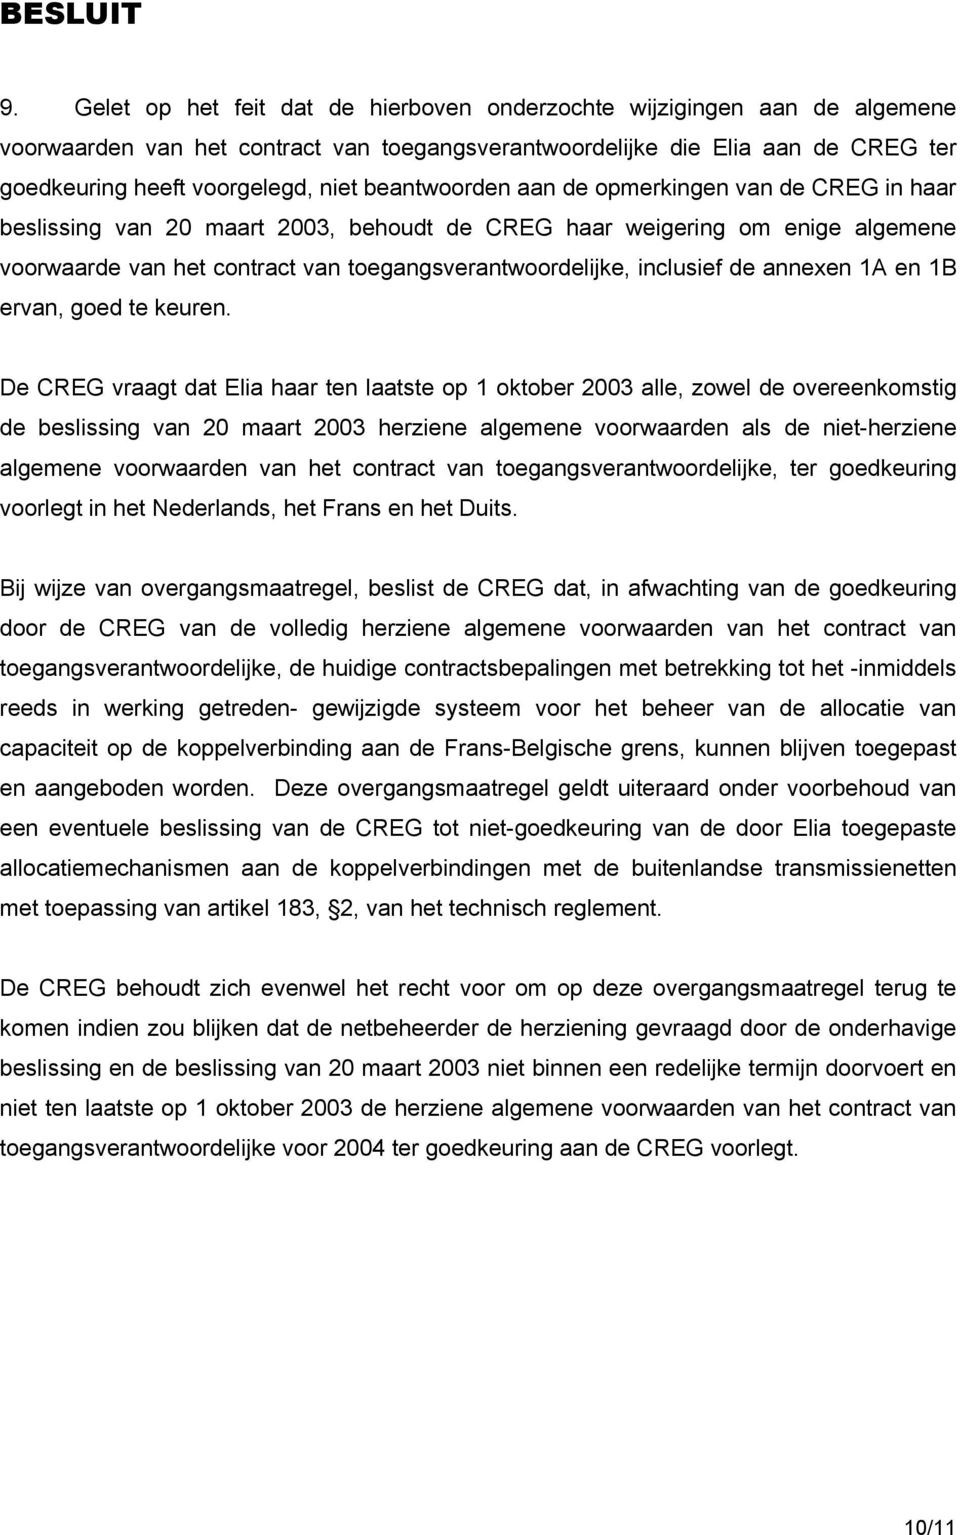 beantwoorden aan de opmerkingen van de CREG in haar beslissing van 20 maart 2003, behoudt de CREG haar weigering om enige algemene voorwaarde van het contract van toegangsverantwoordelijke, inclusief